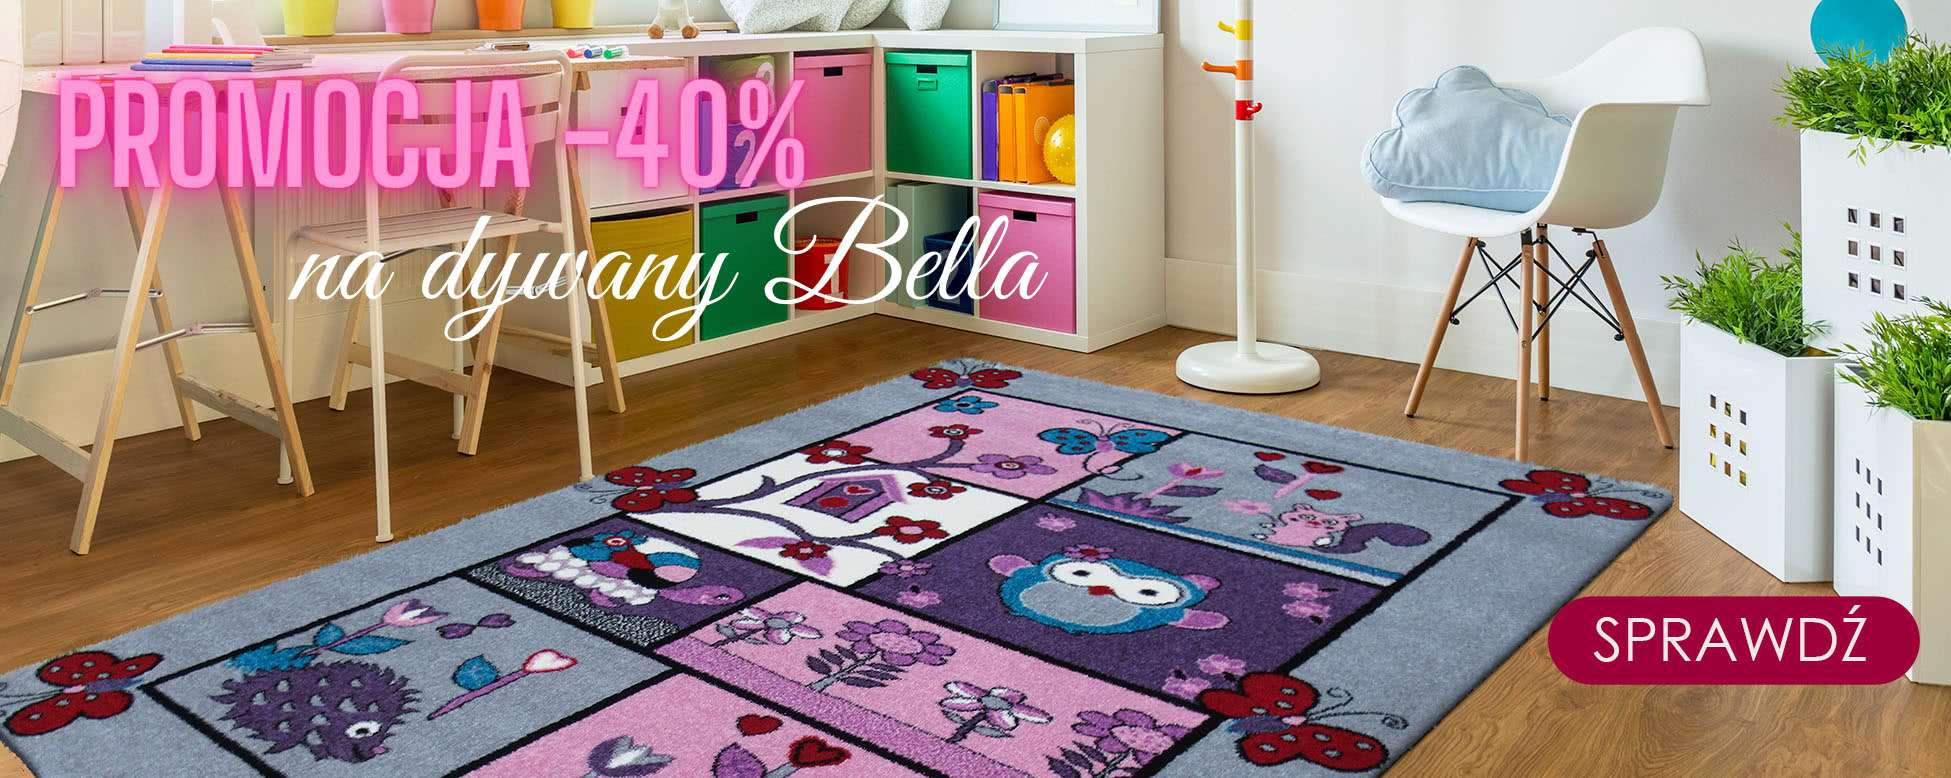 promocja dywany Bella